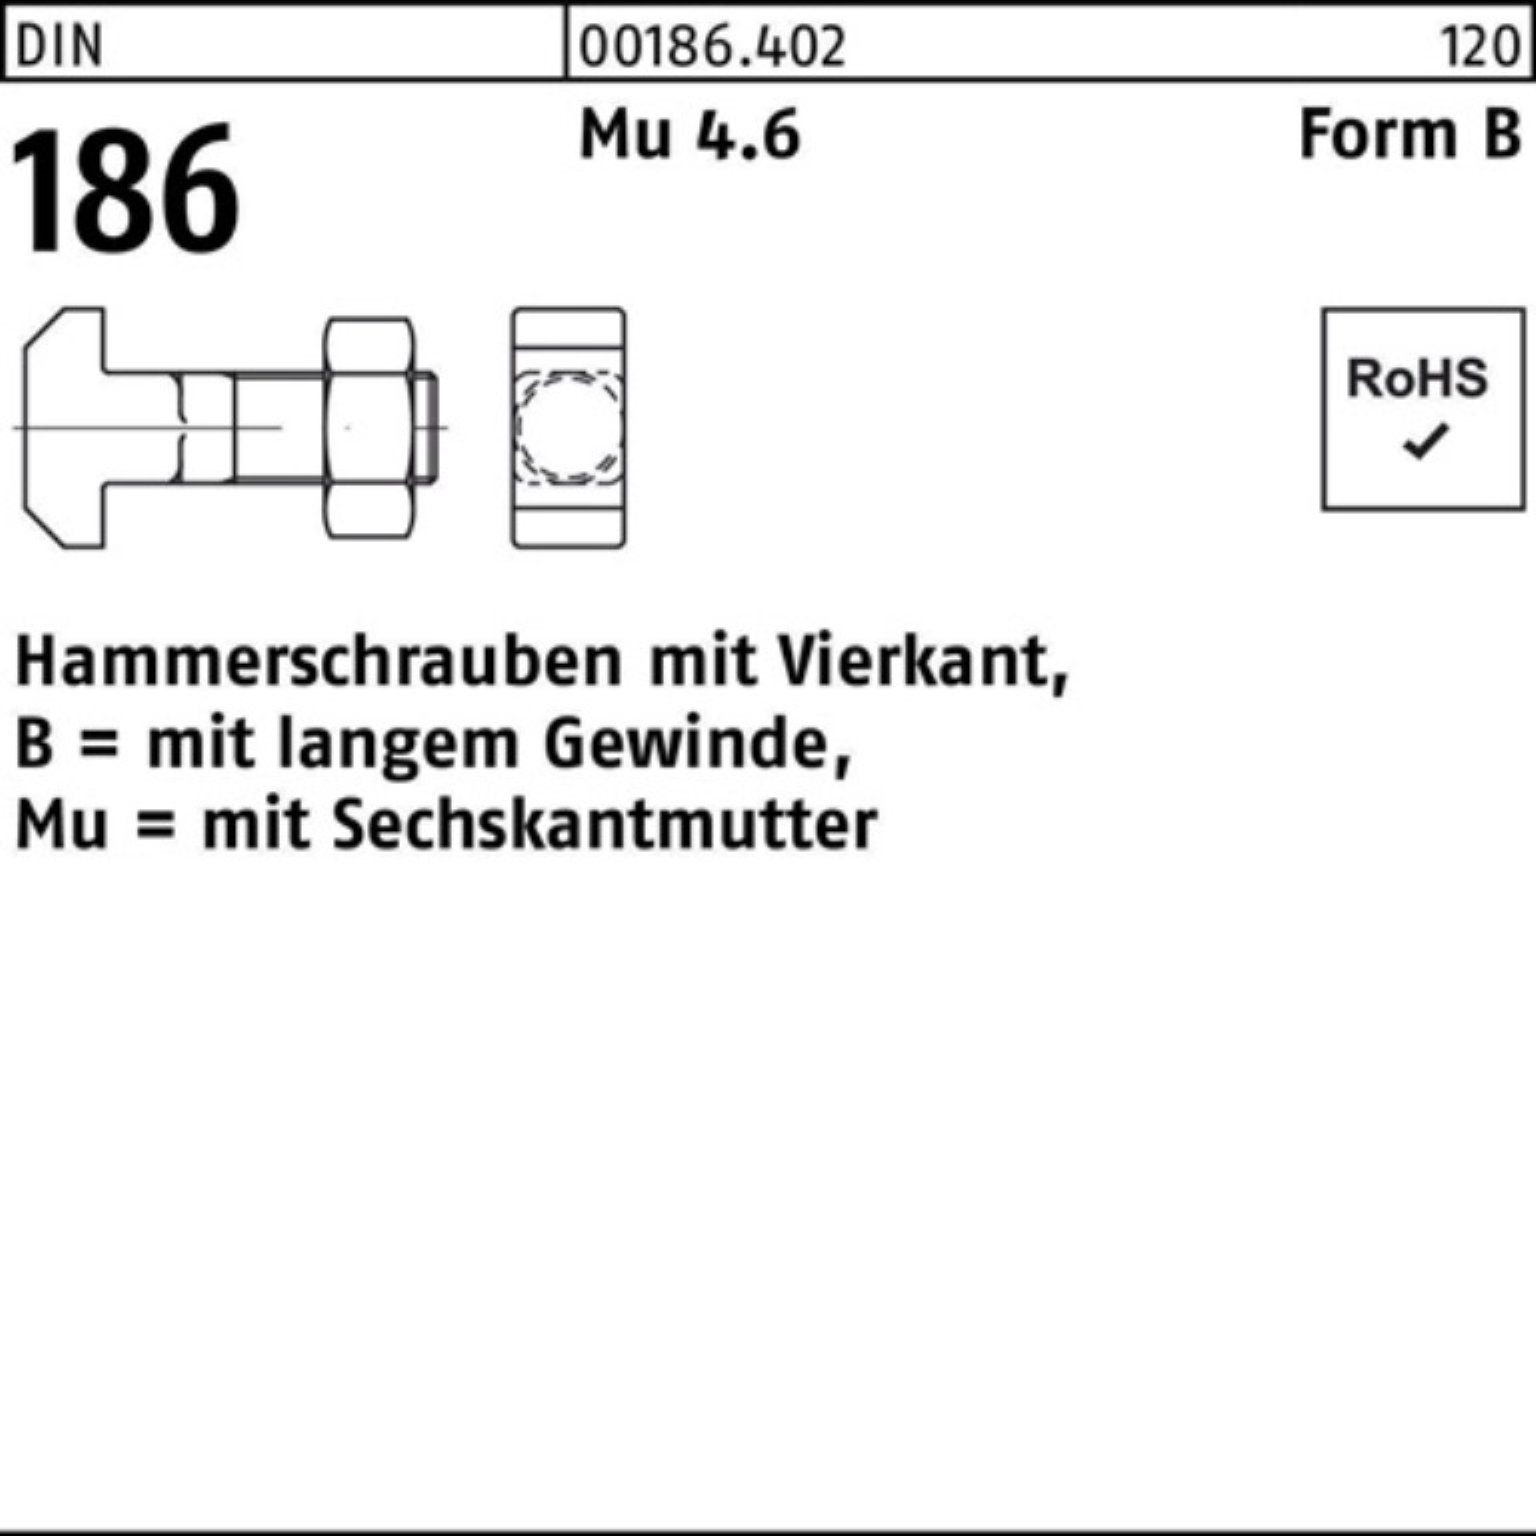 Pack 186 90 12x DIN Vierkant Schraube 100er BM Hammerschraube FormB Reyher 6-ktmutter